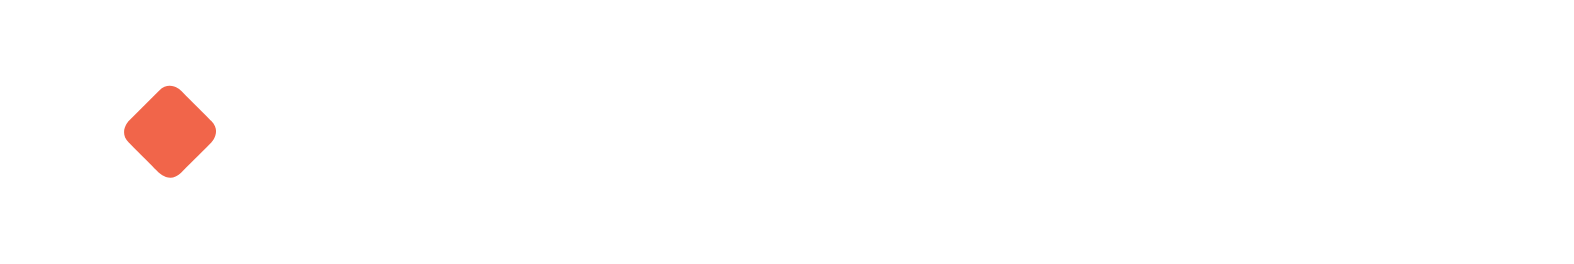 Cimpress logo grand pour les fonds sombres (PNG transparent)